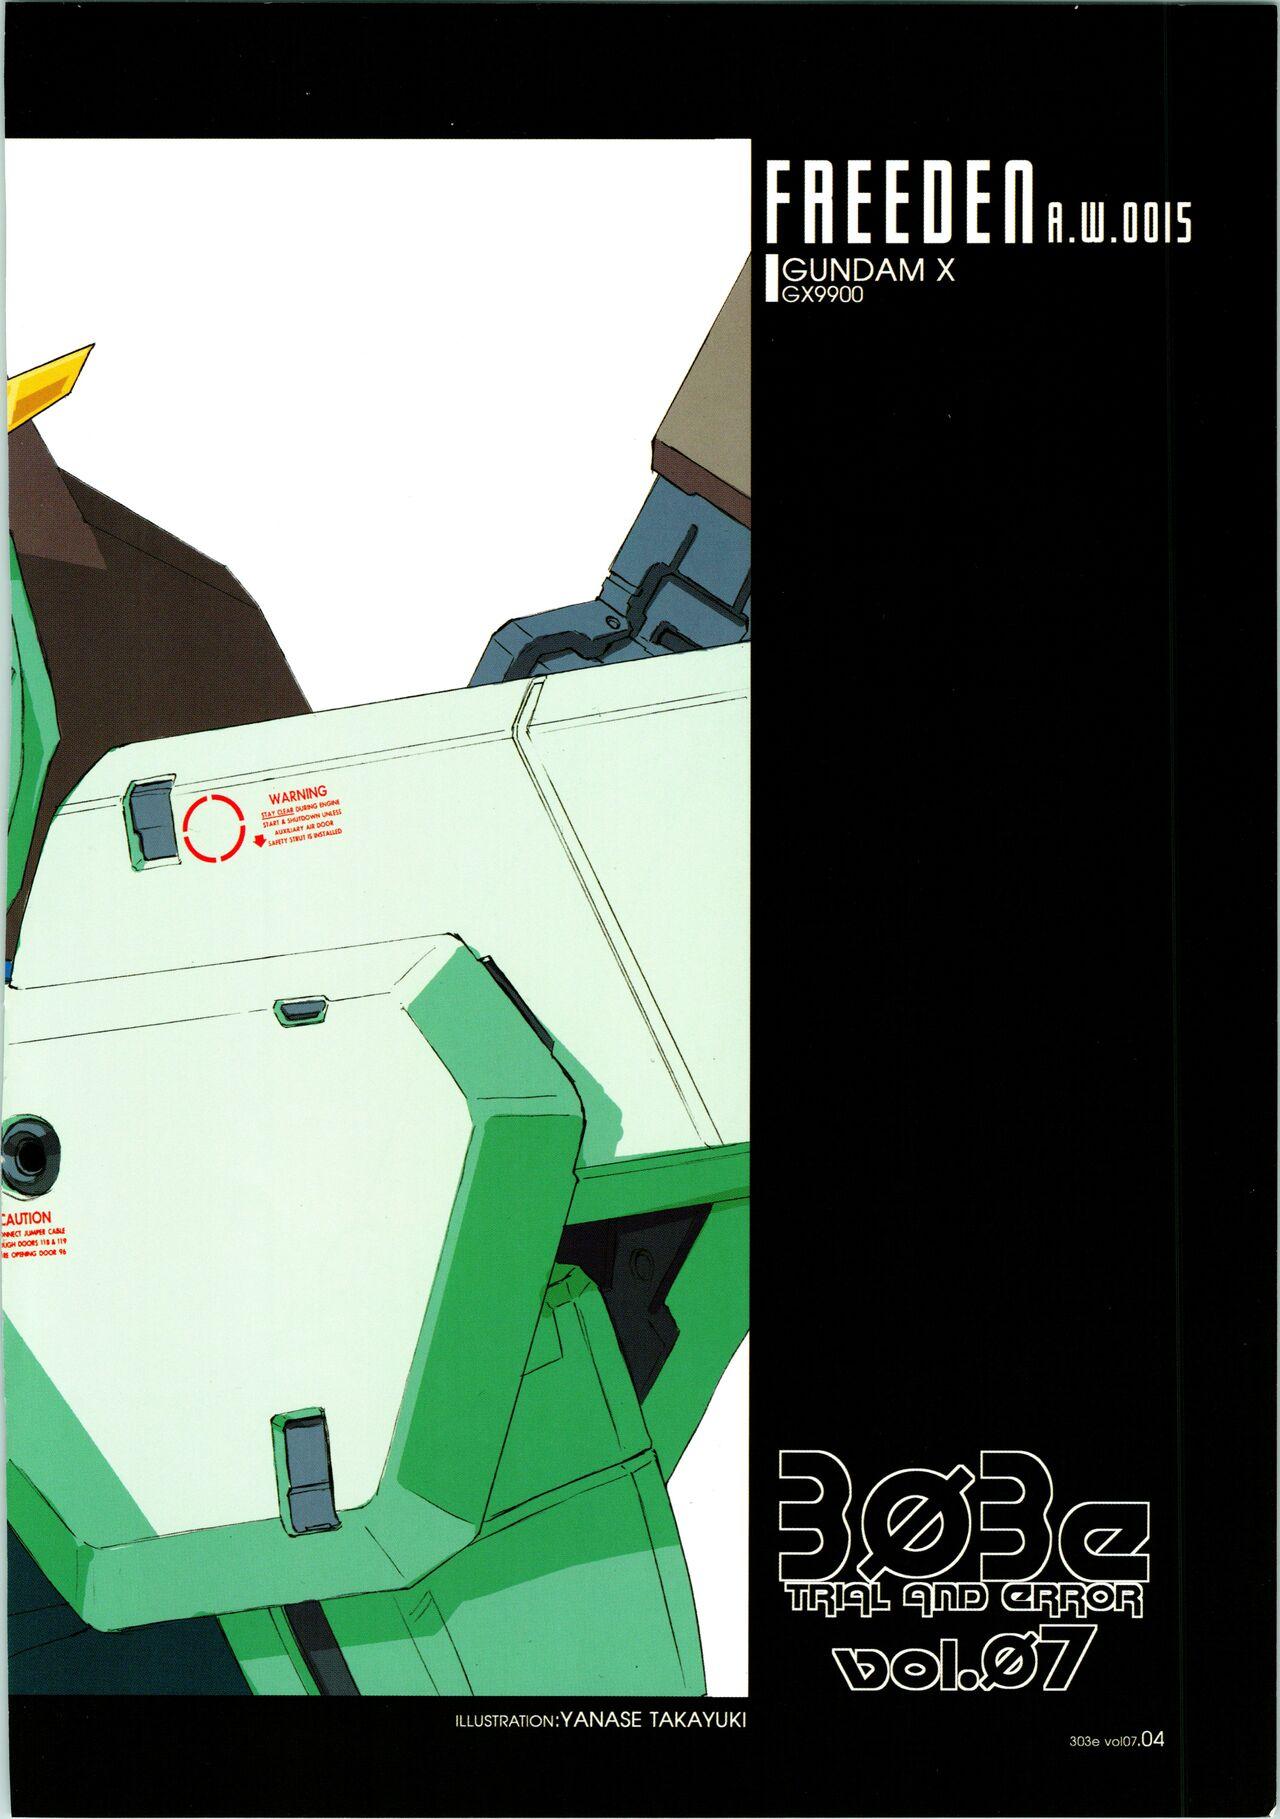 Siririca [WINDFALL (Aburaage)] 303e Vol. 07 (Gundam X, R.O.D the TV) ZHOA8229 - Read or die Gundam x Beard - Page 4